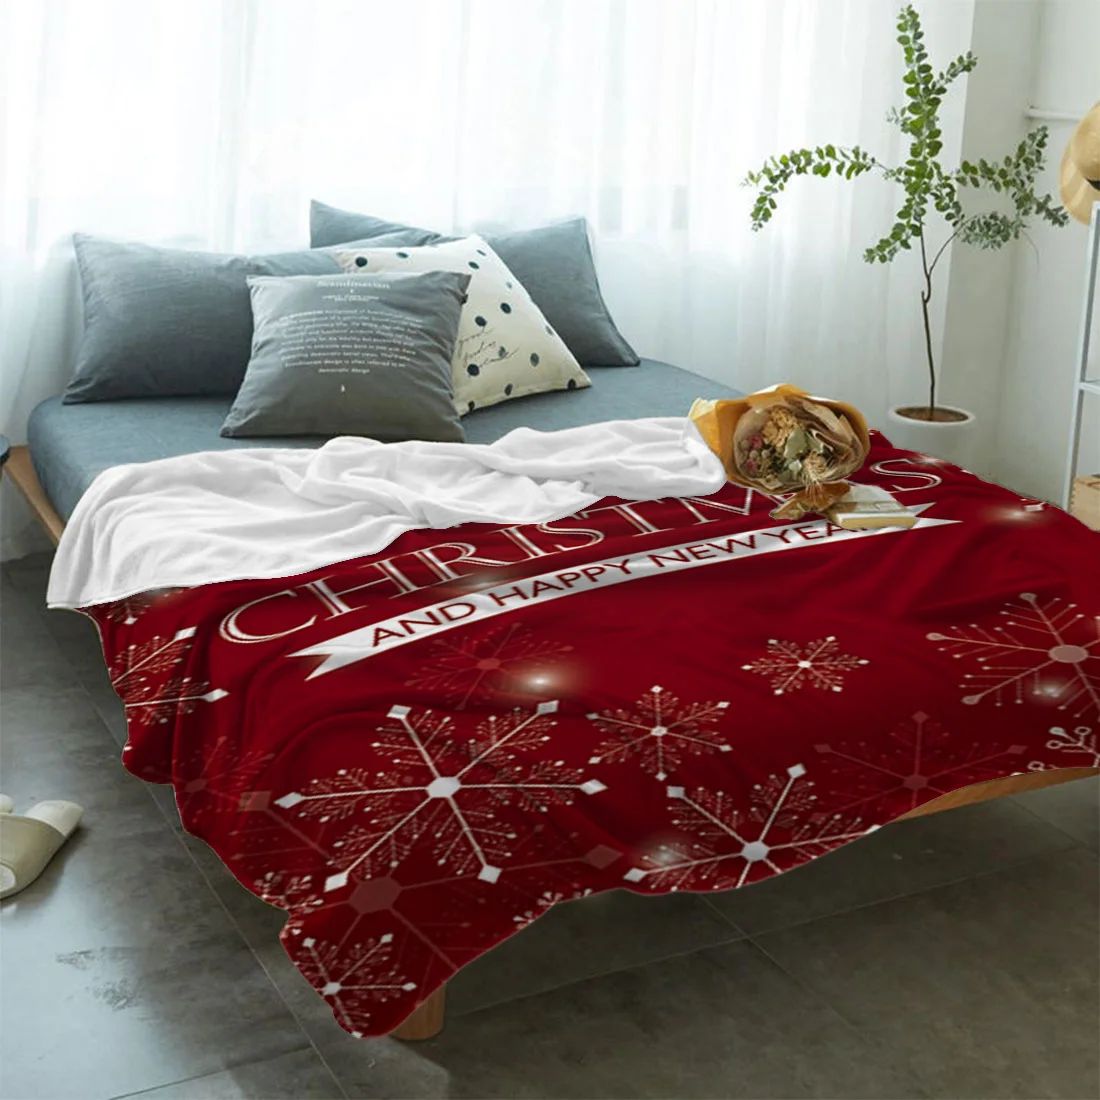 Мягкое удобное фланелевое одеяло Merry Christmas Снежинка печать пледы одеяло Рождество s красный диван простыни Прямая поставка